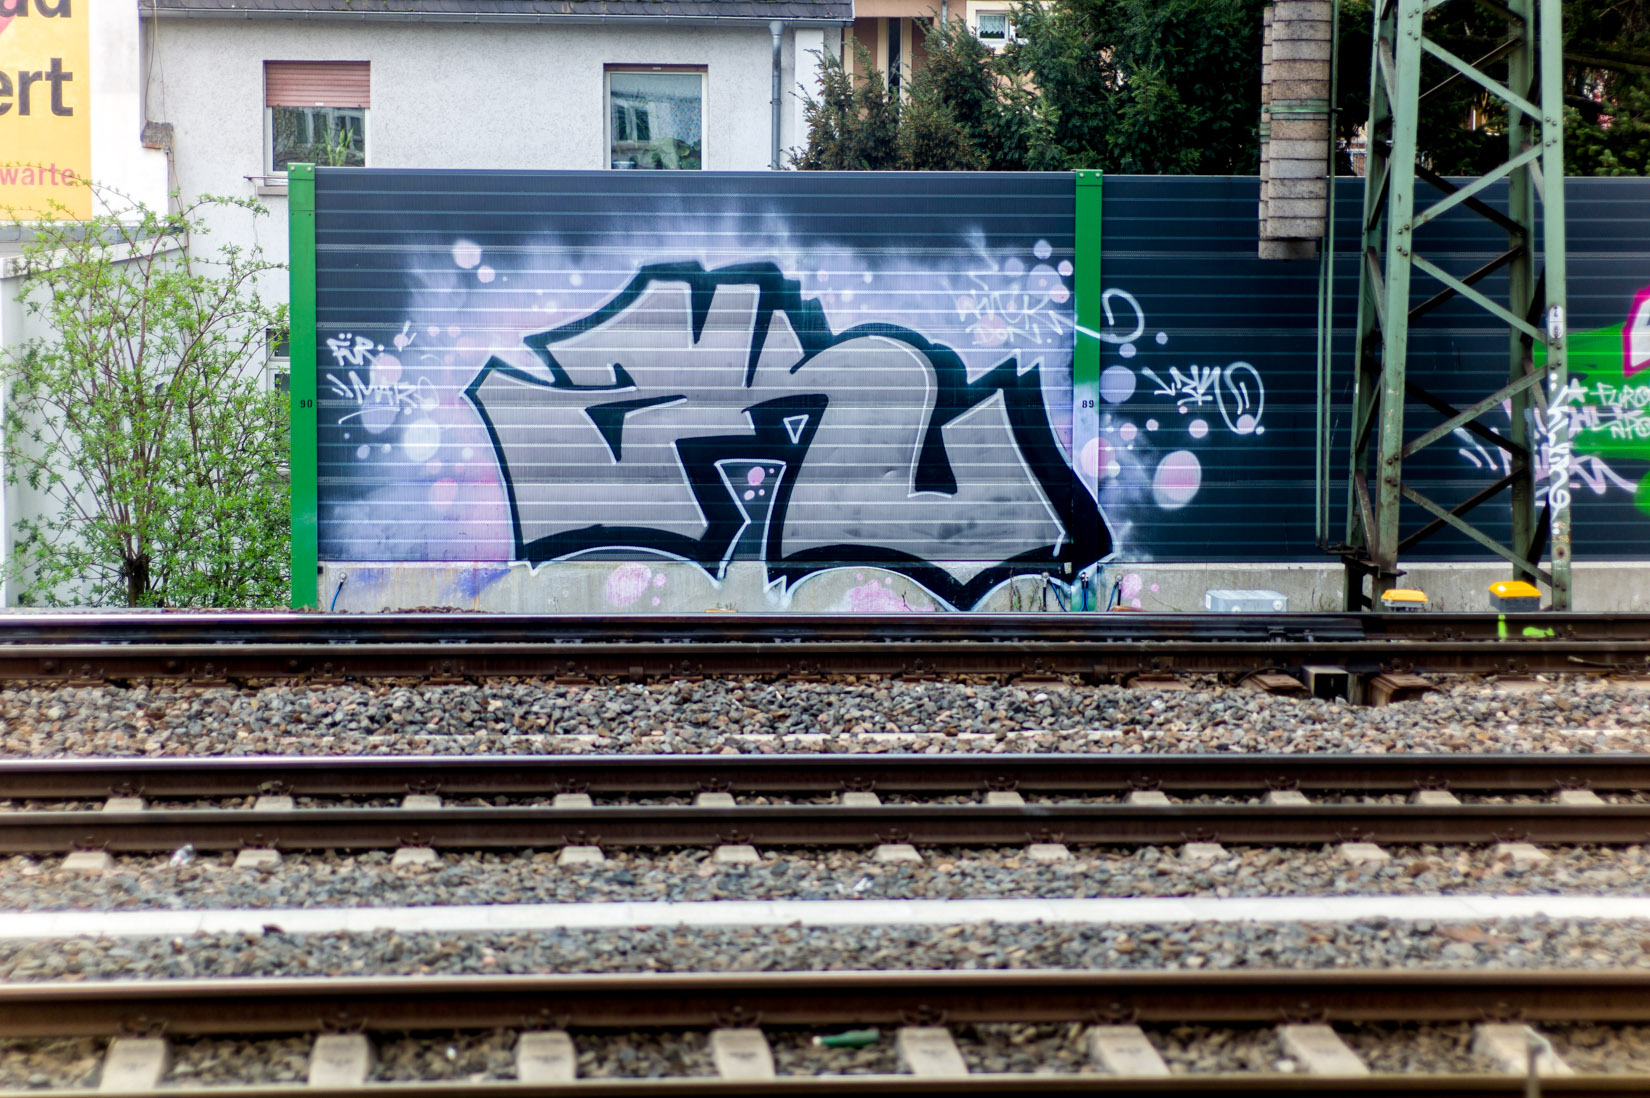 Frankfurt_Graffiti_Gallus Warte_2014-03 (20 von 45)